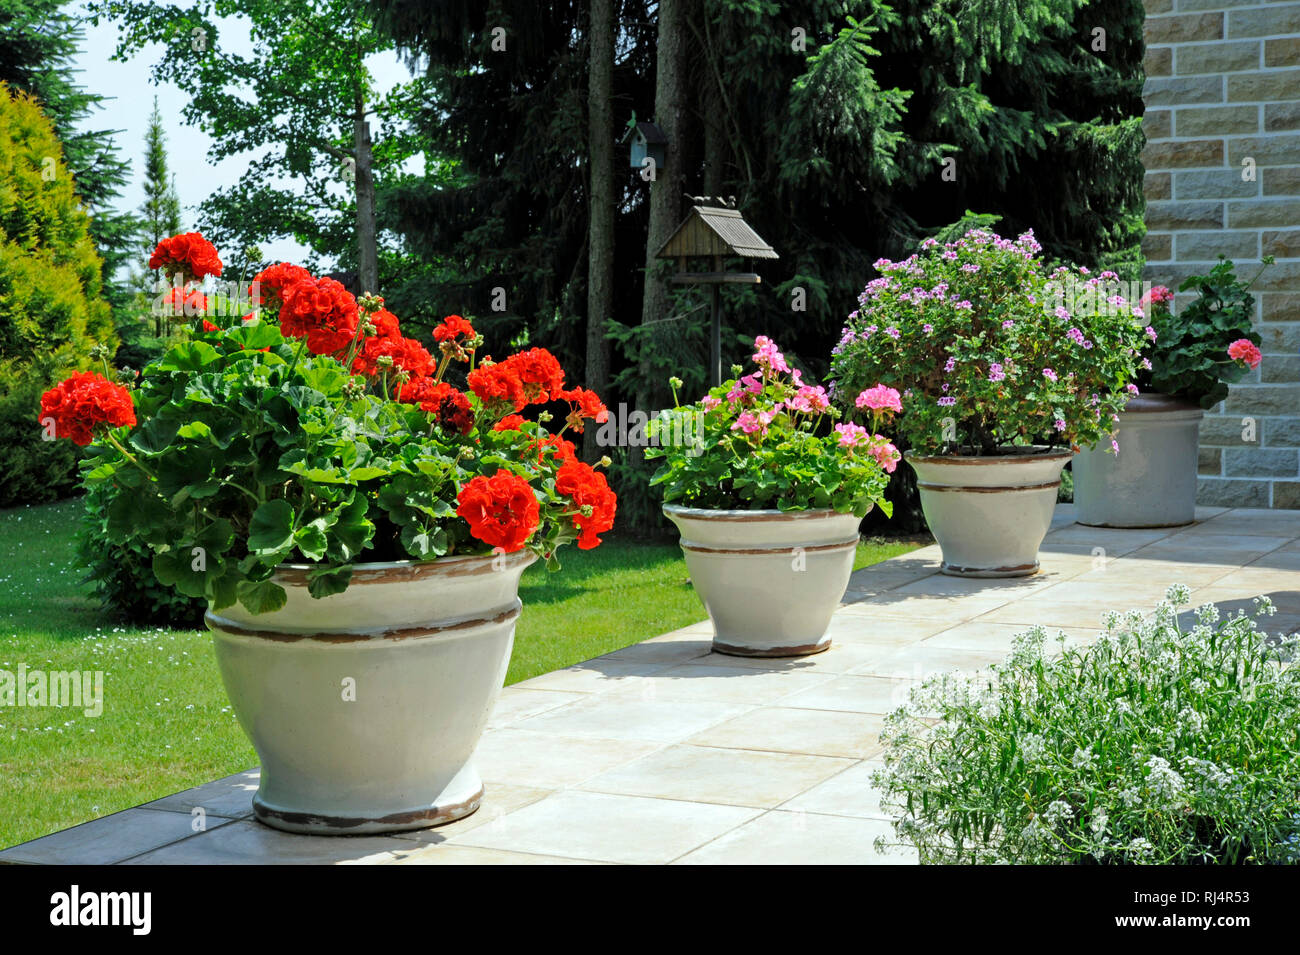 Gartenterrasse mit Topfpflanzen in italienischen Designerkeramik, Stock Photo